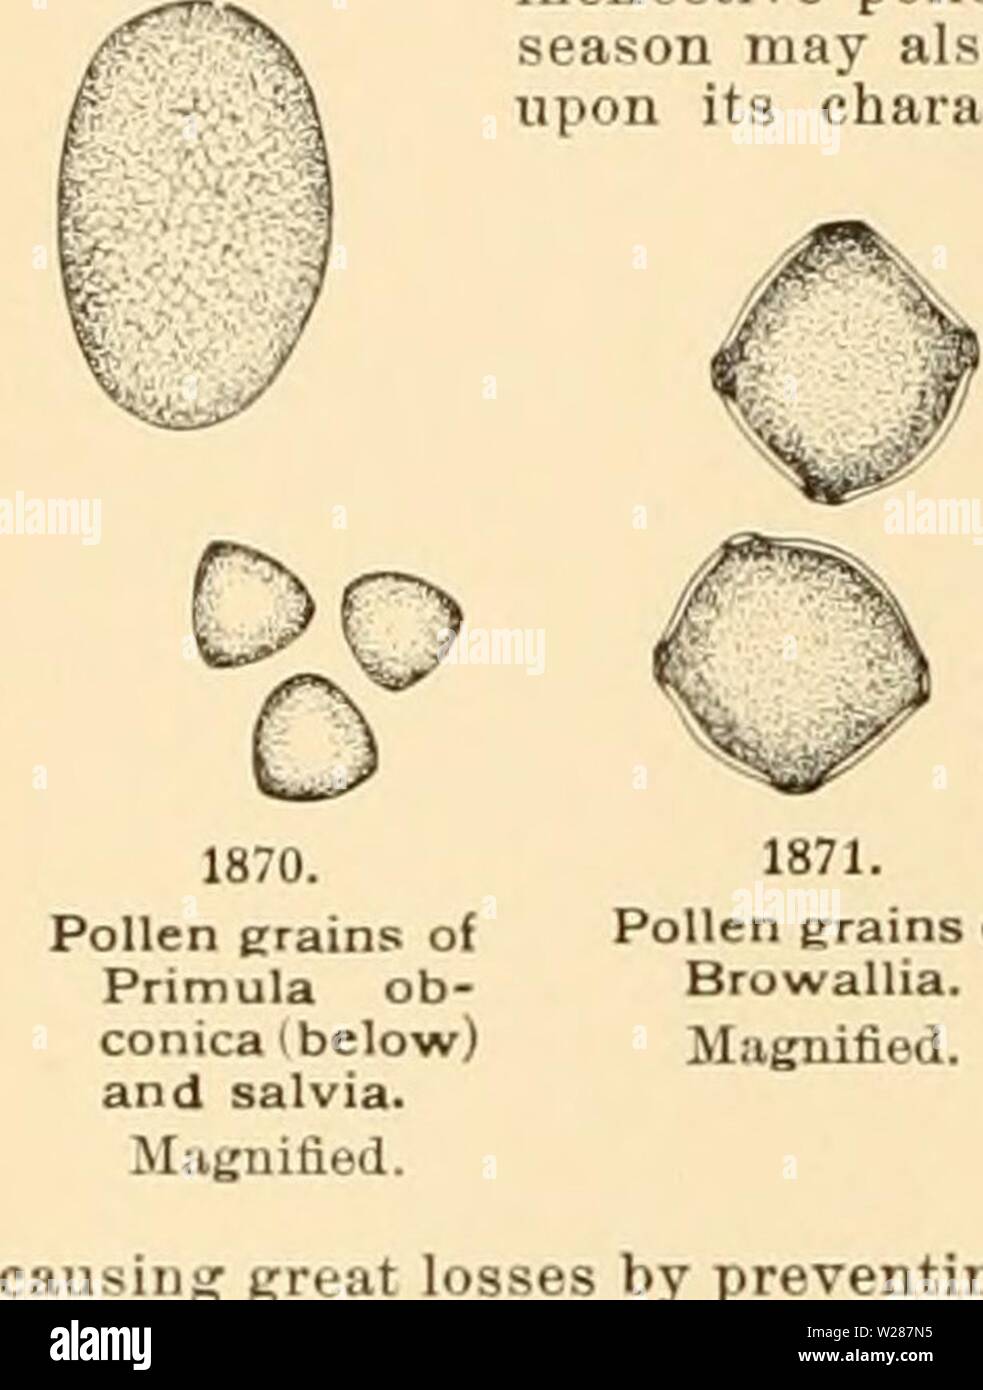 Image d'archive à partir de la page 379 de la Cyclopaedia of American horticulture Banque D'Images